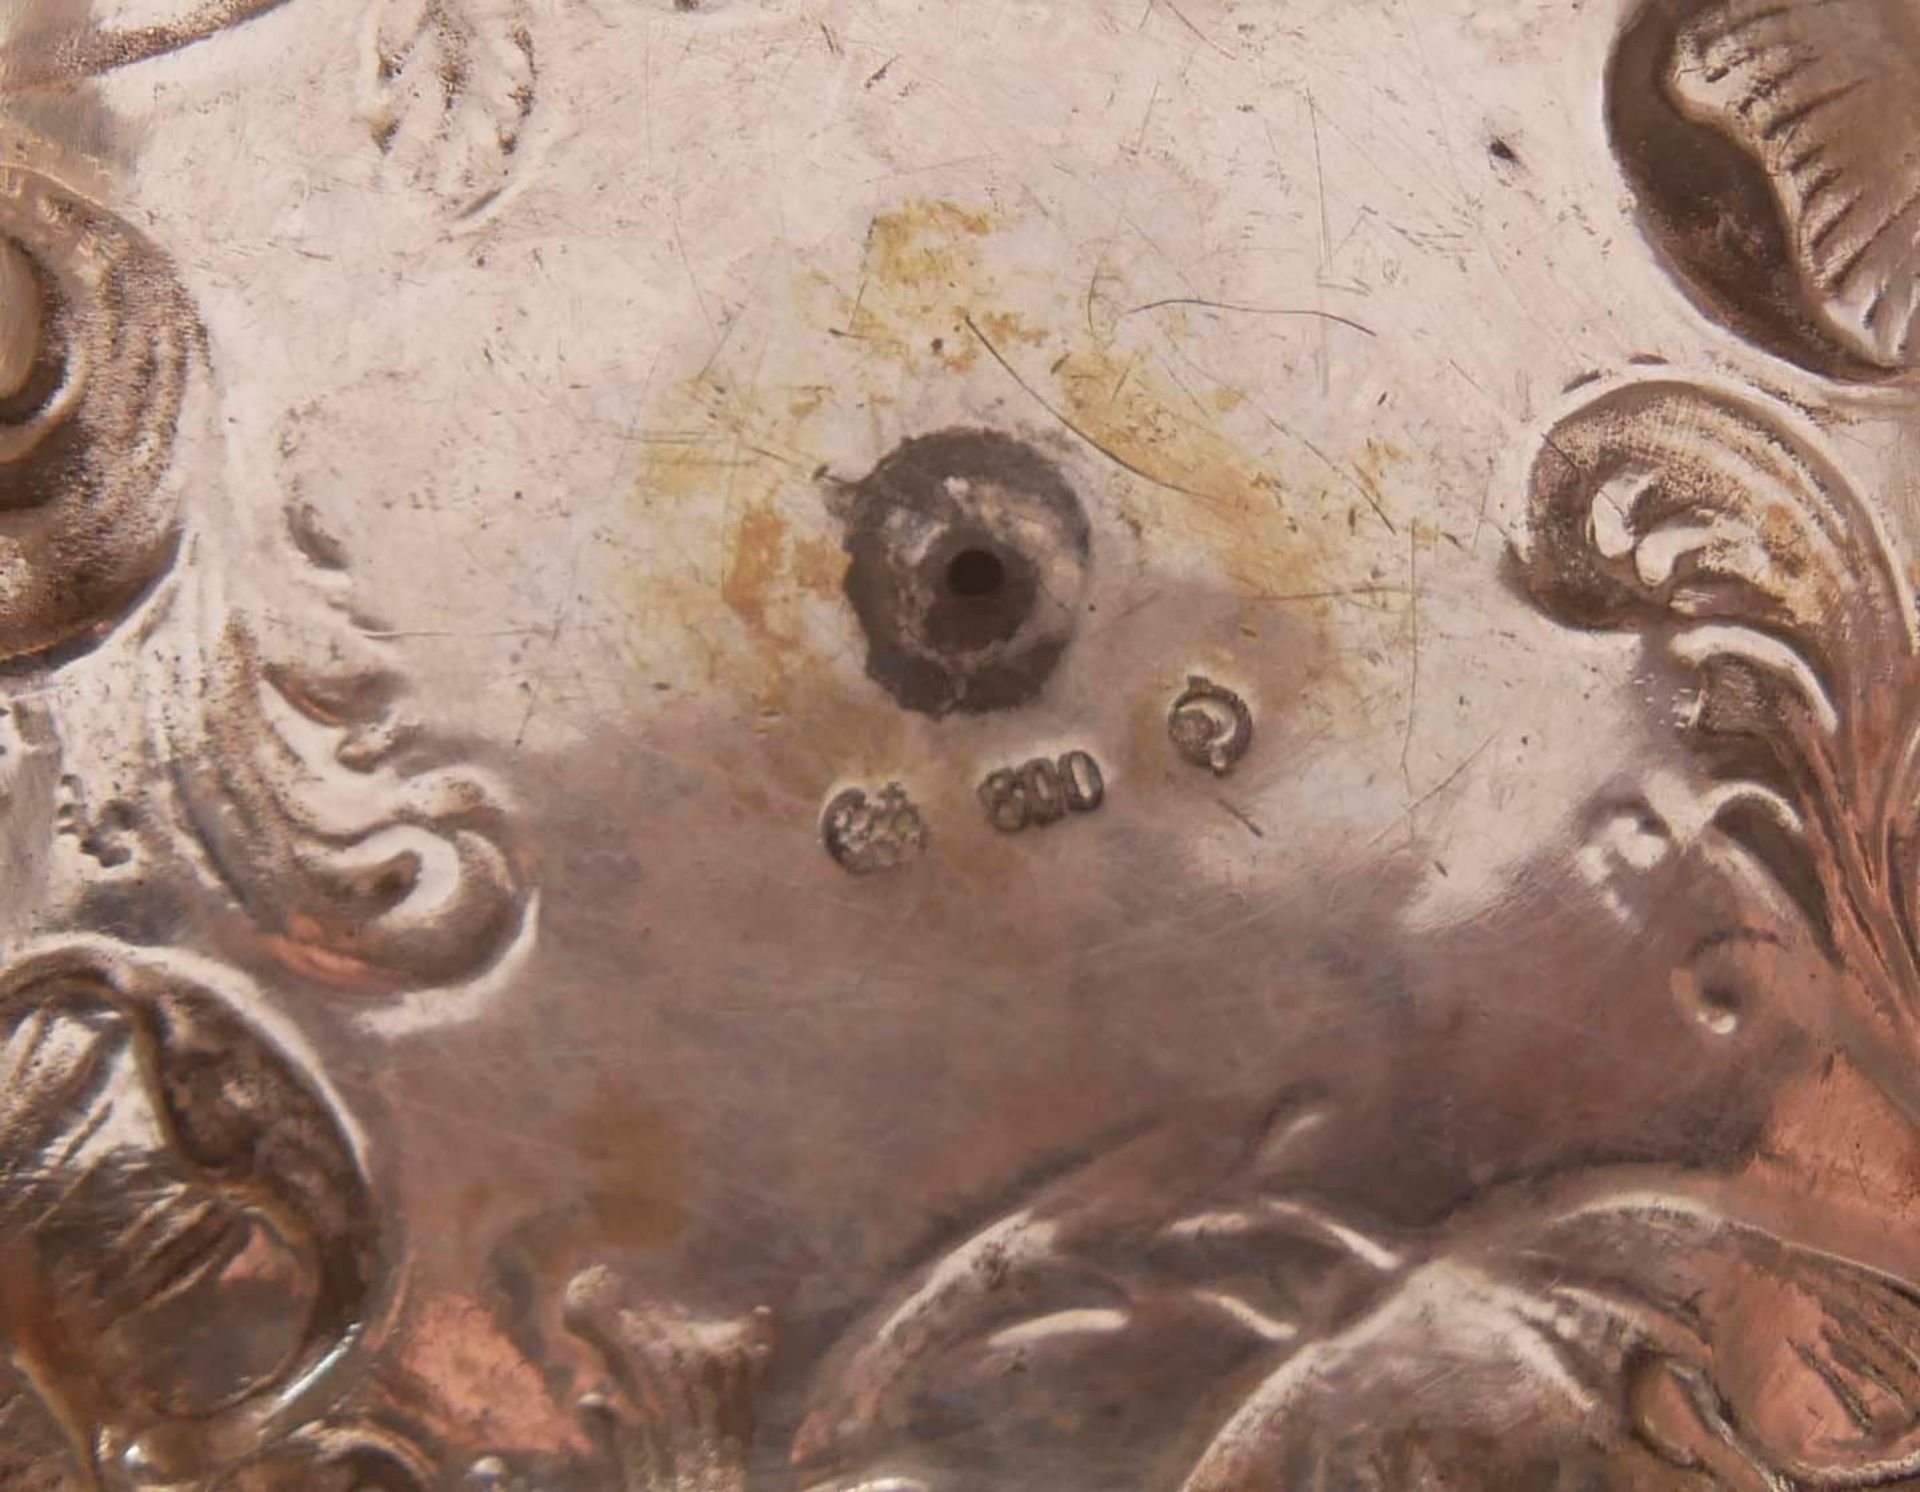 Silberleuchter Y.D. Schleißner Hanau wohl 17. Jahrhundert, mit Gebrauchsspuren. Höhe ca. 12 cm - Image 3 of 3